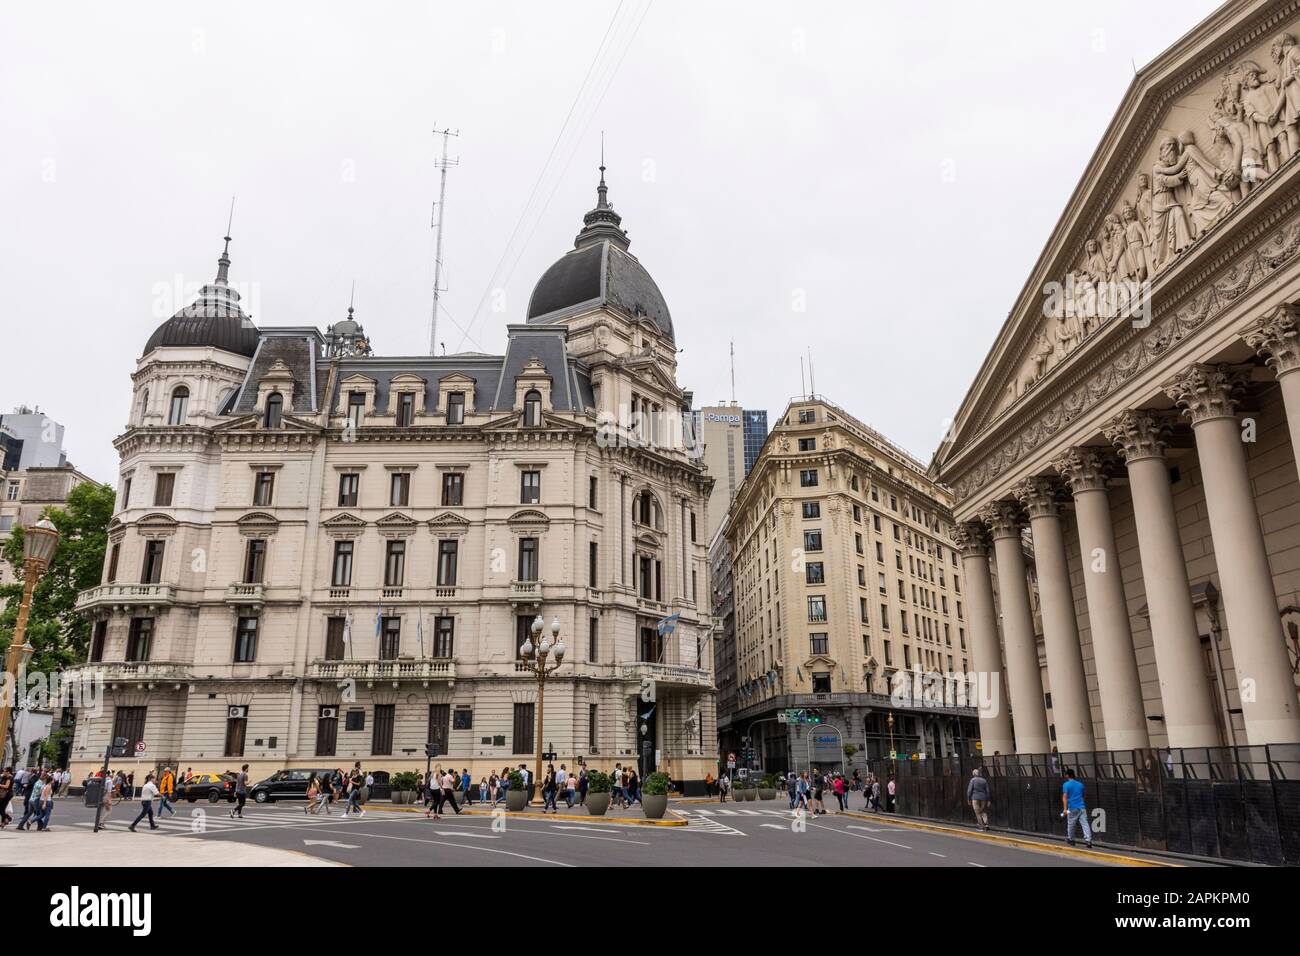 Belle vue sur les bâtiments historiques autour de la Plaza de Mayo dans le centre de Buenos Aires, en Argentine Banque D'Images